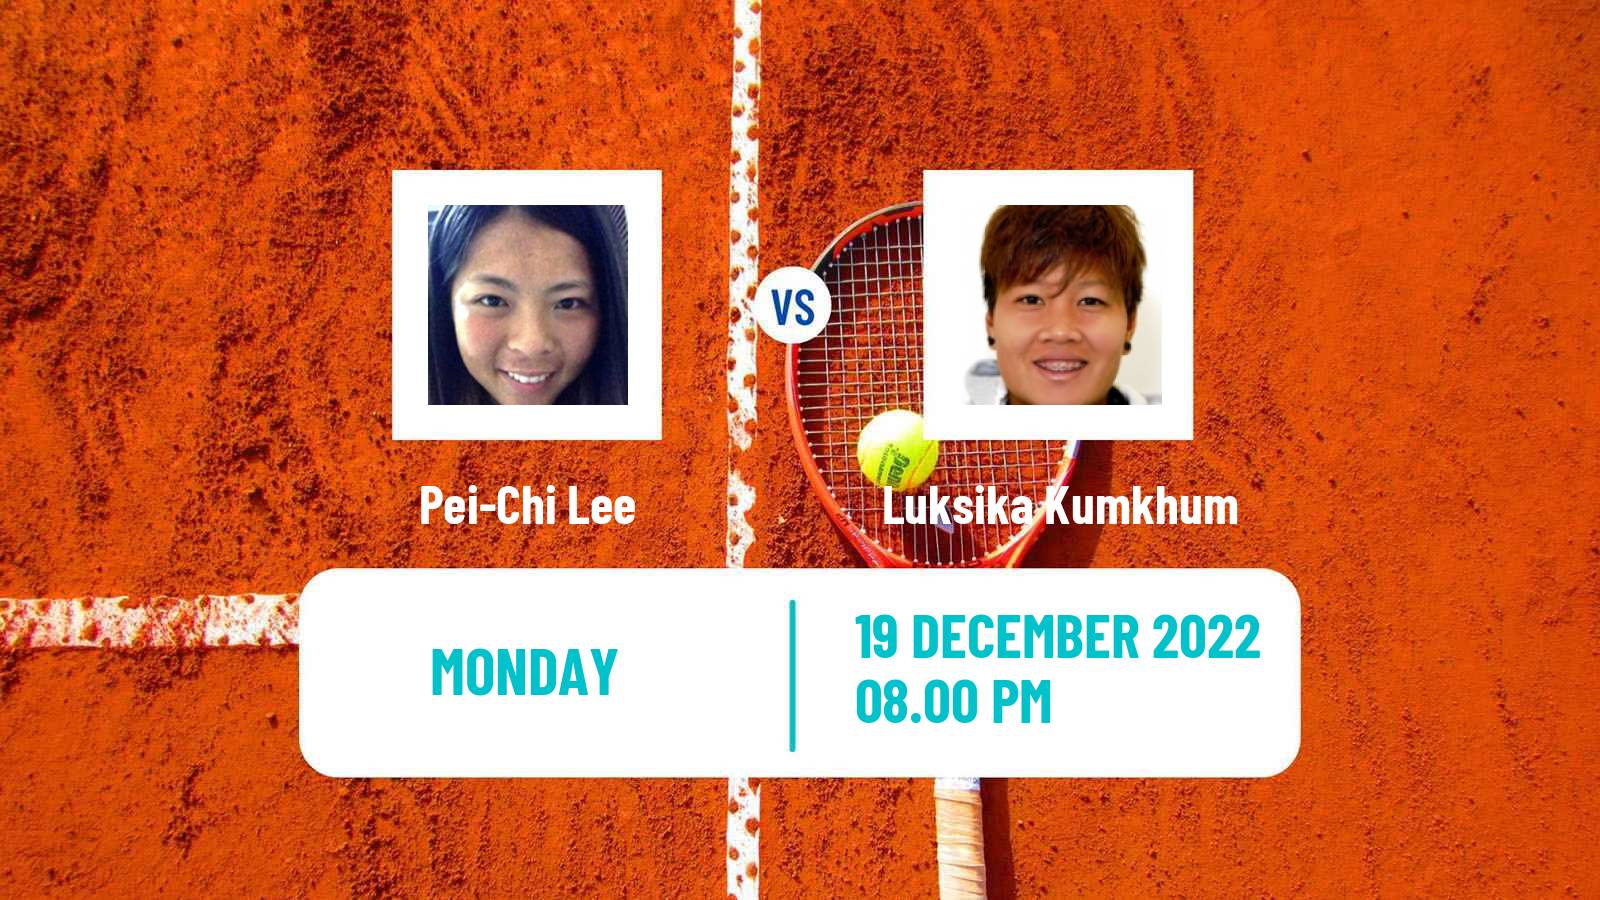 Tennis ITF Tournaments Pei-Chi Lee - Luksika Kumkhum